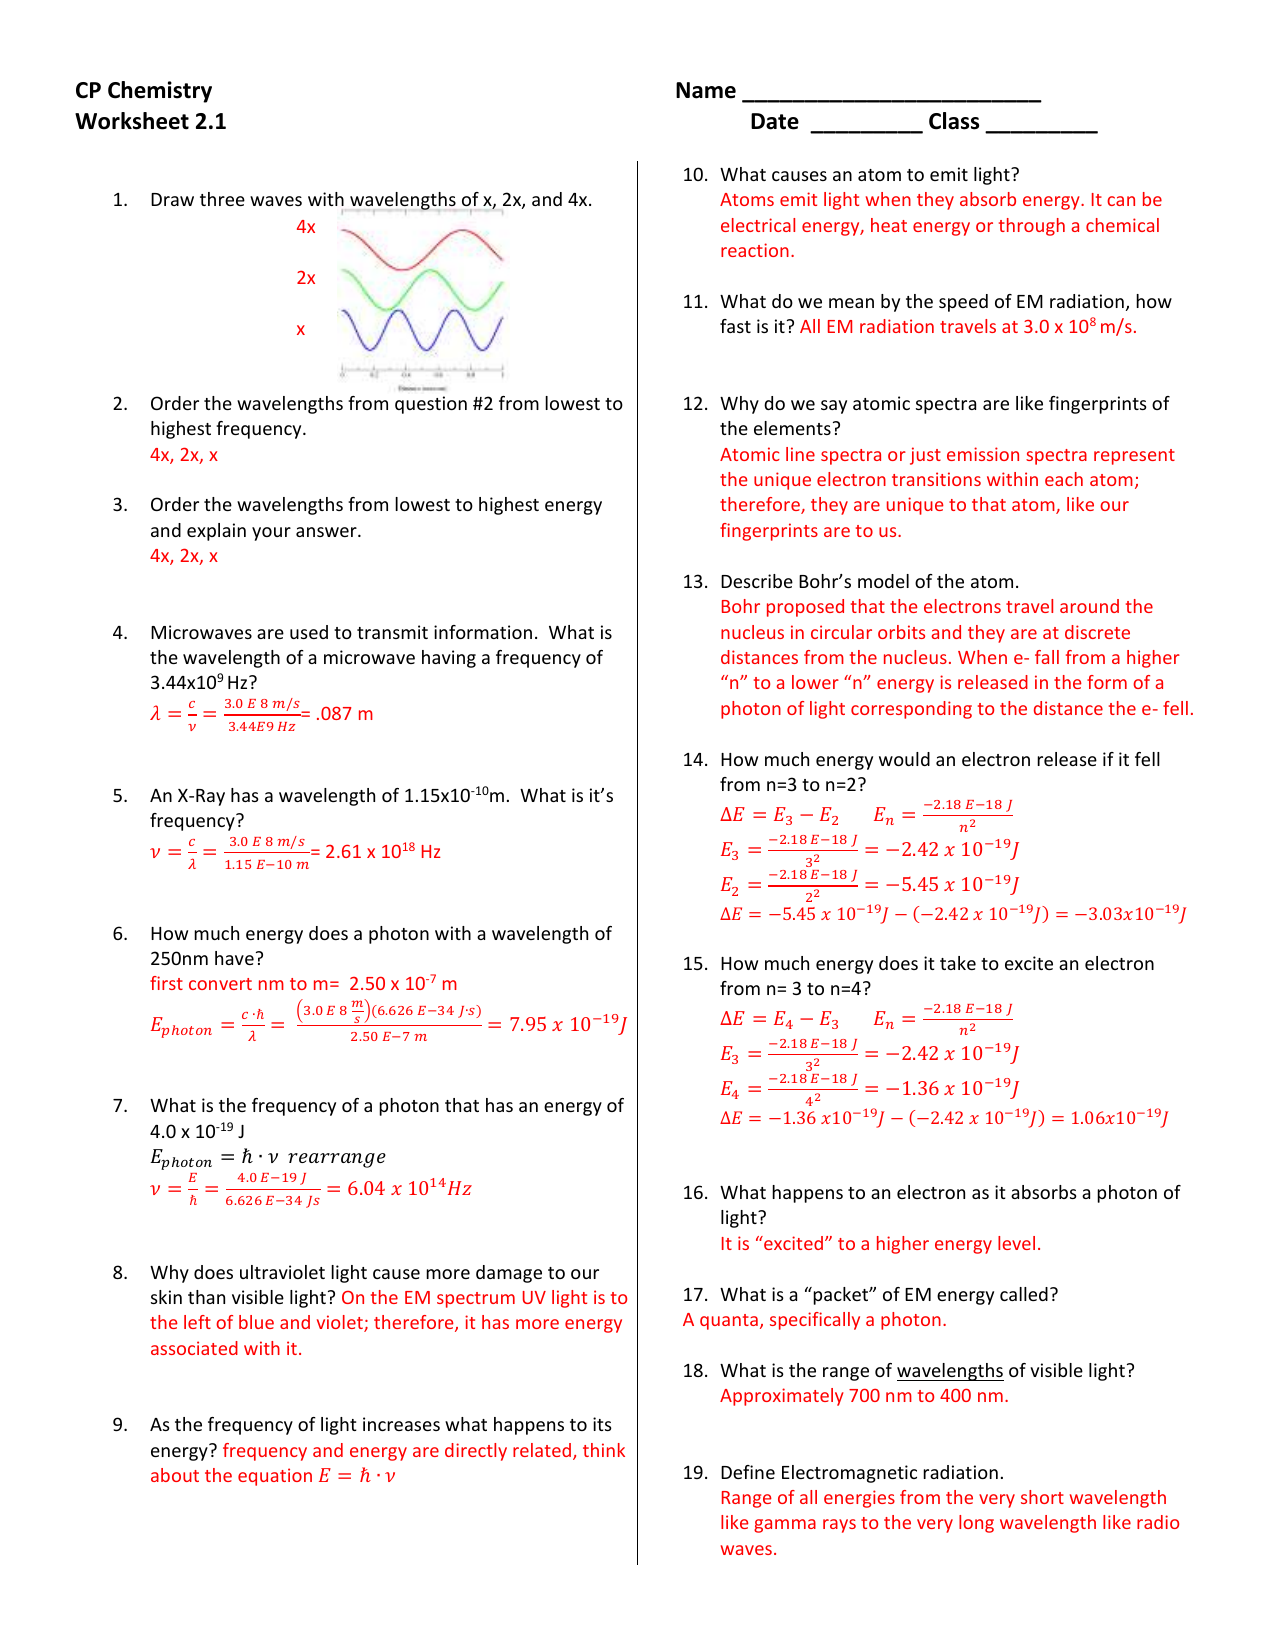 honors chemistry homework #3